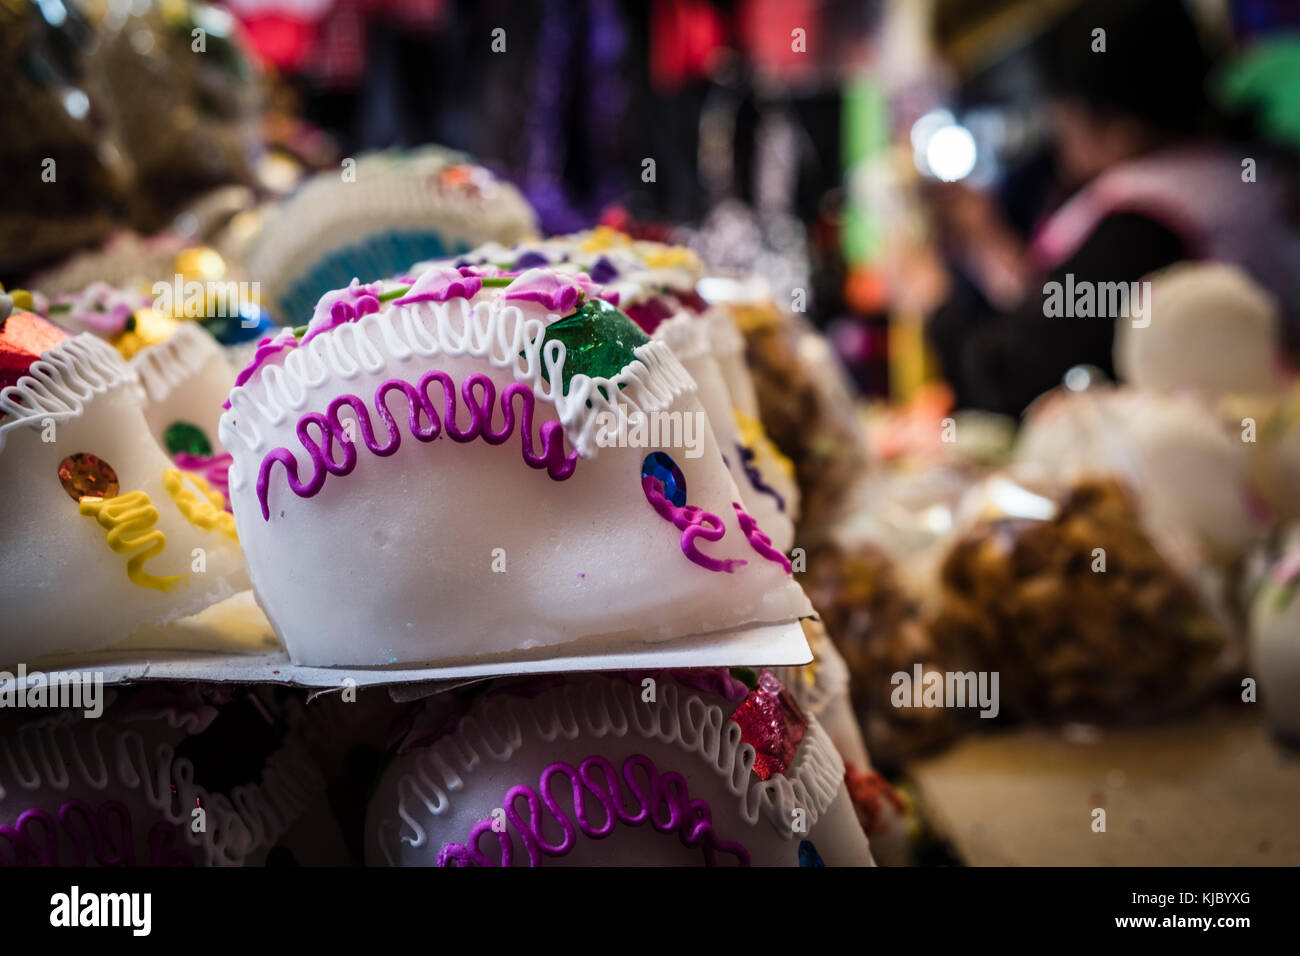 Calaveras de azucar, Mercado de San Angel, Dia de muertos. Sugar Skulls. Mexico City Stock Photo